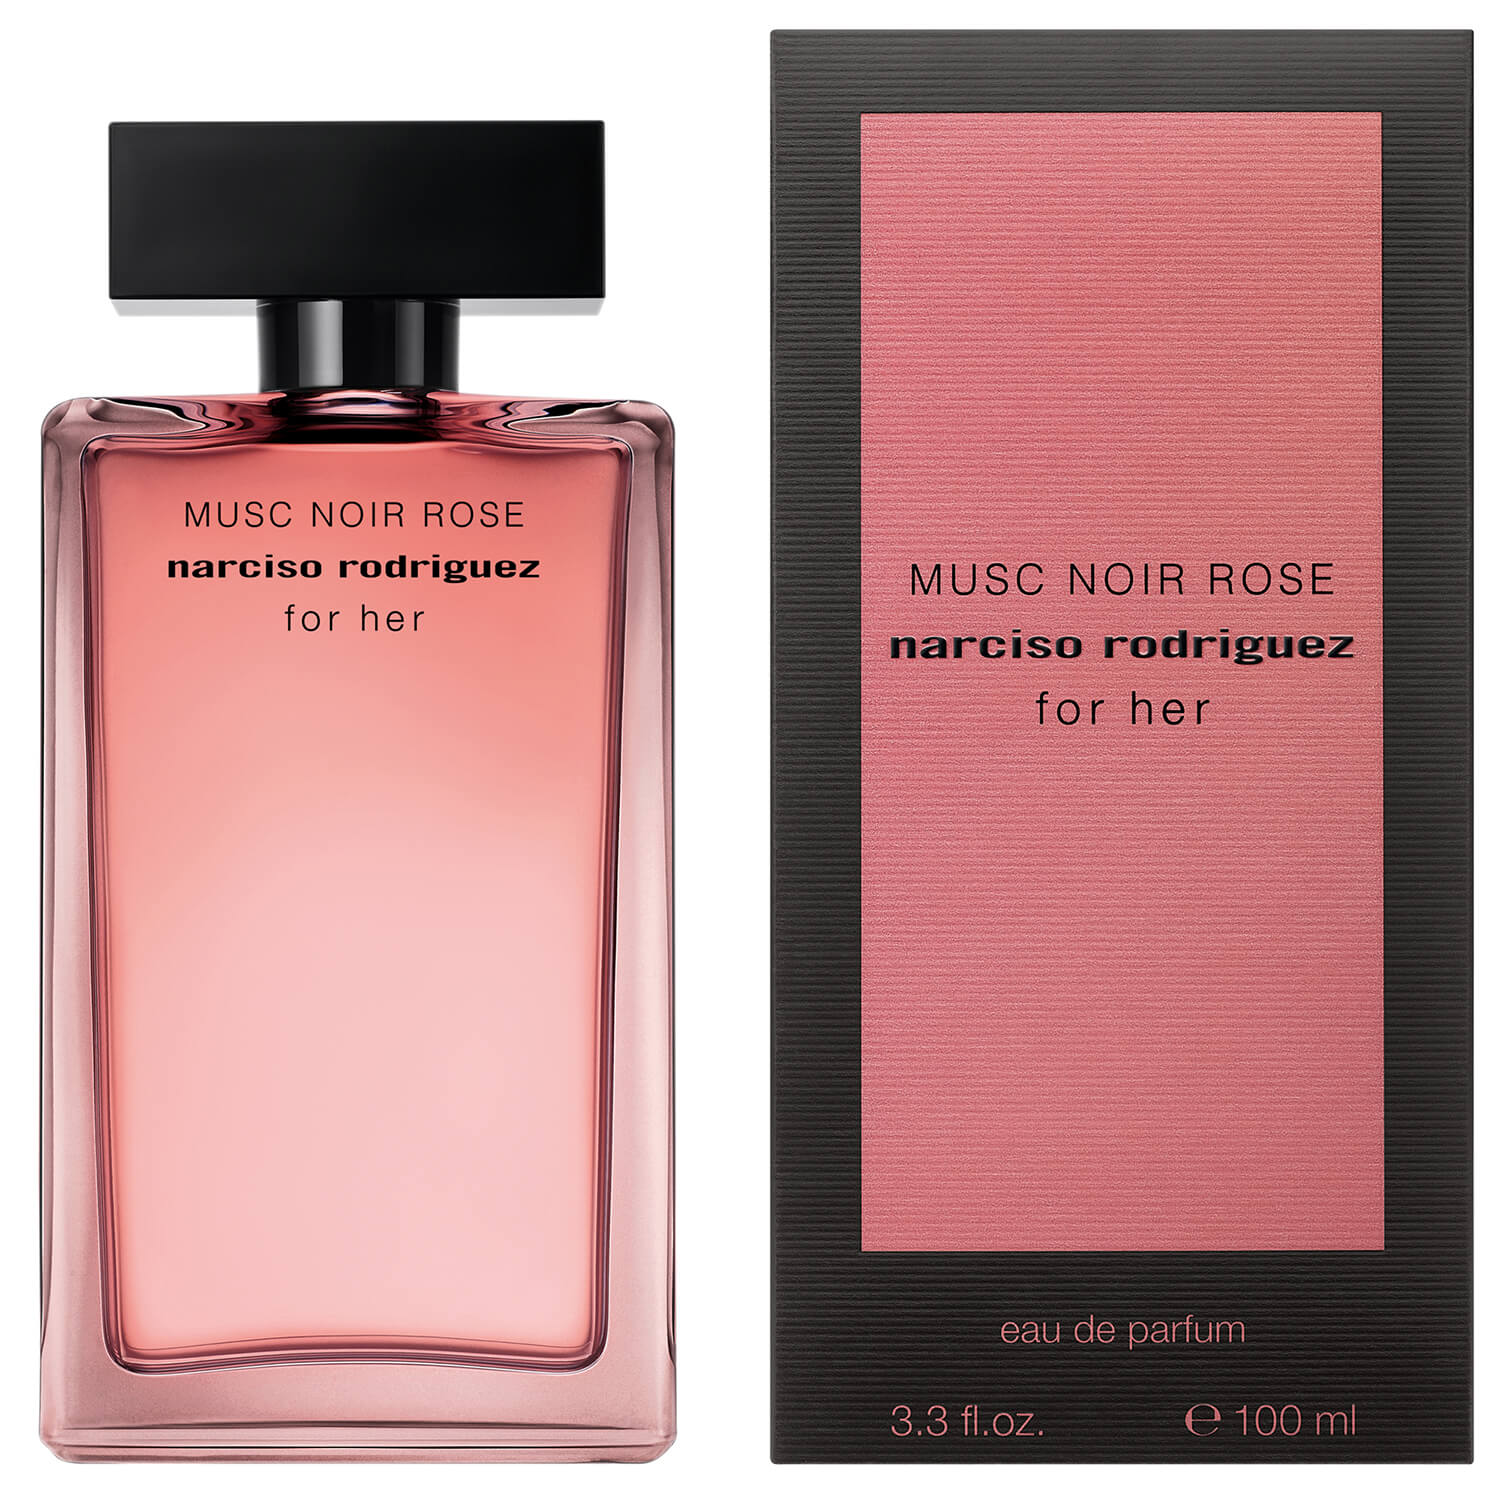 Narciso Rodriguez Musc Noir Rose Eau De Parfum 1 Shaws Department Stores